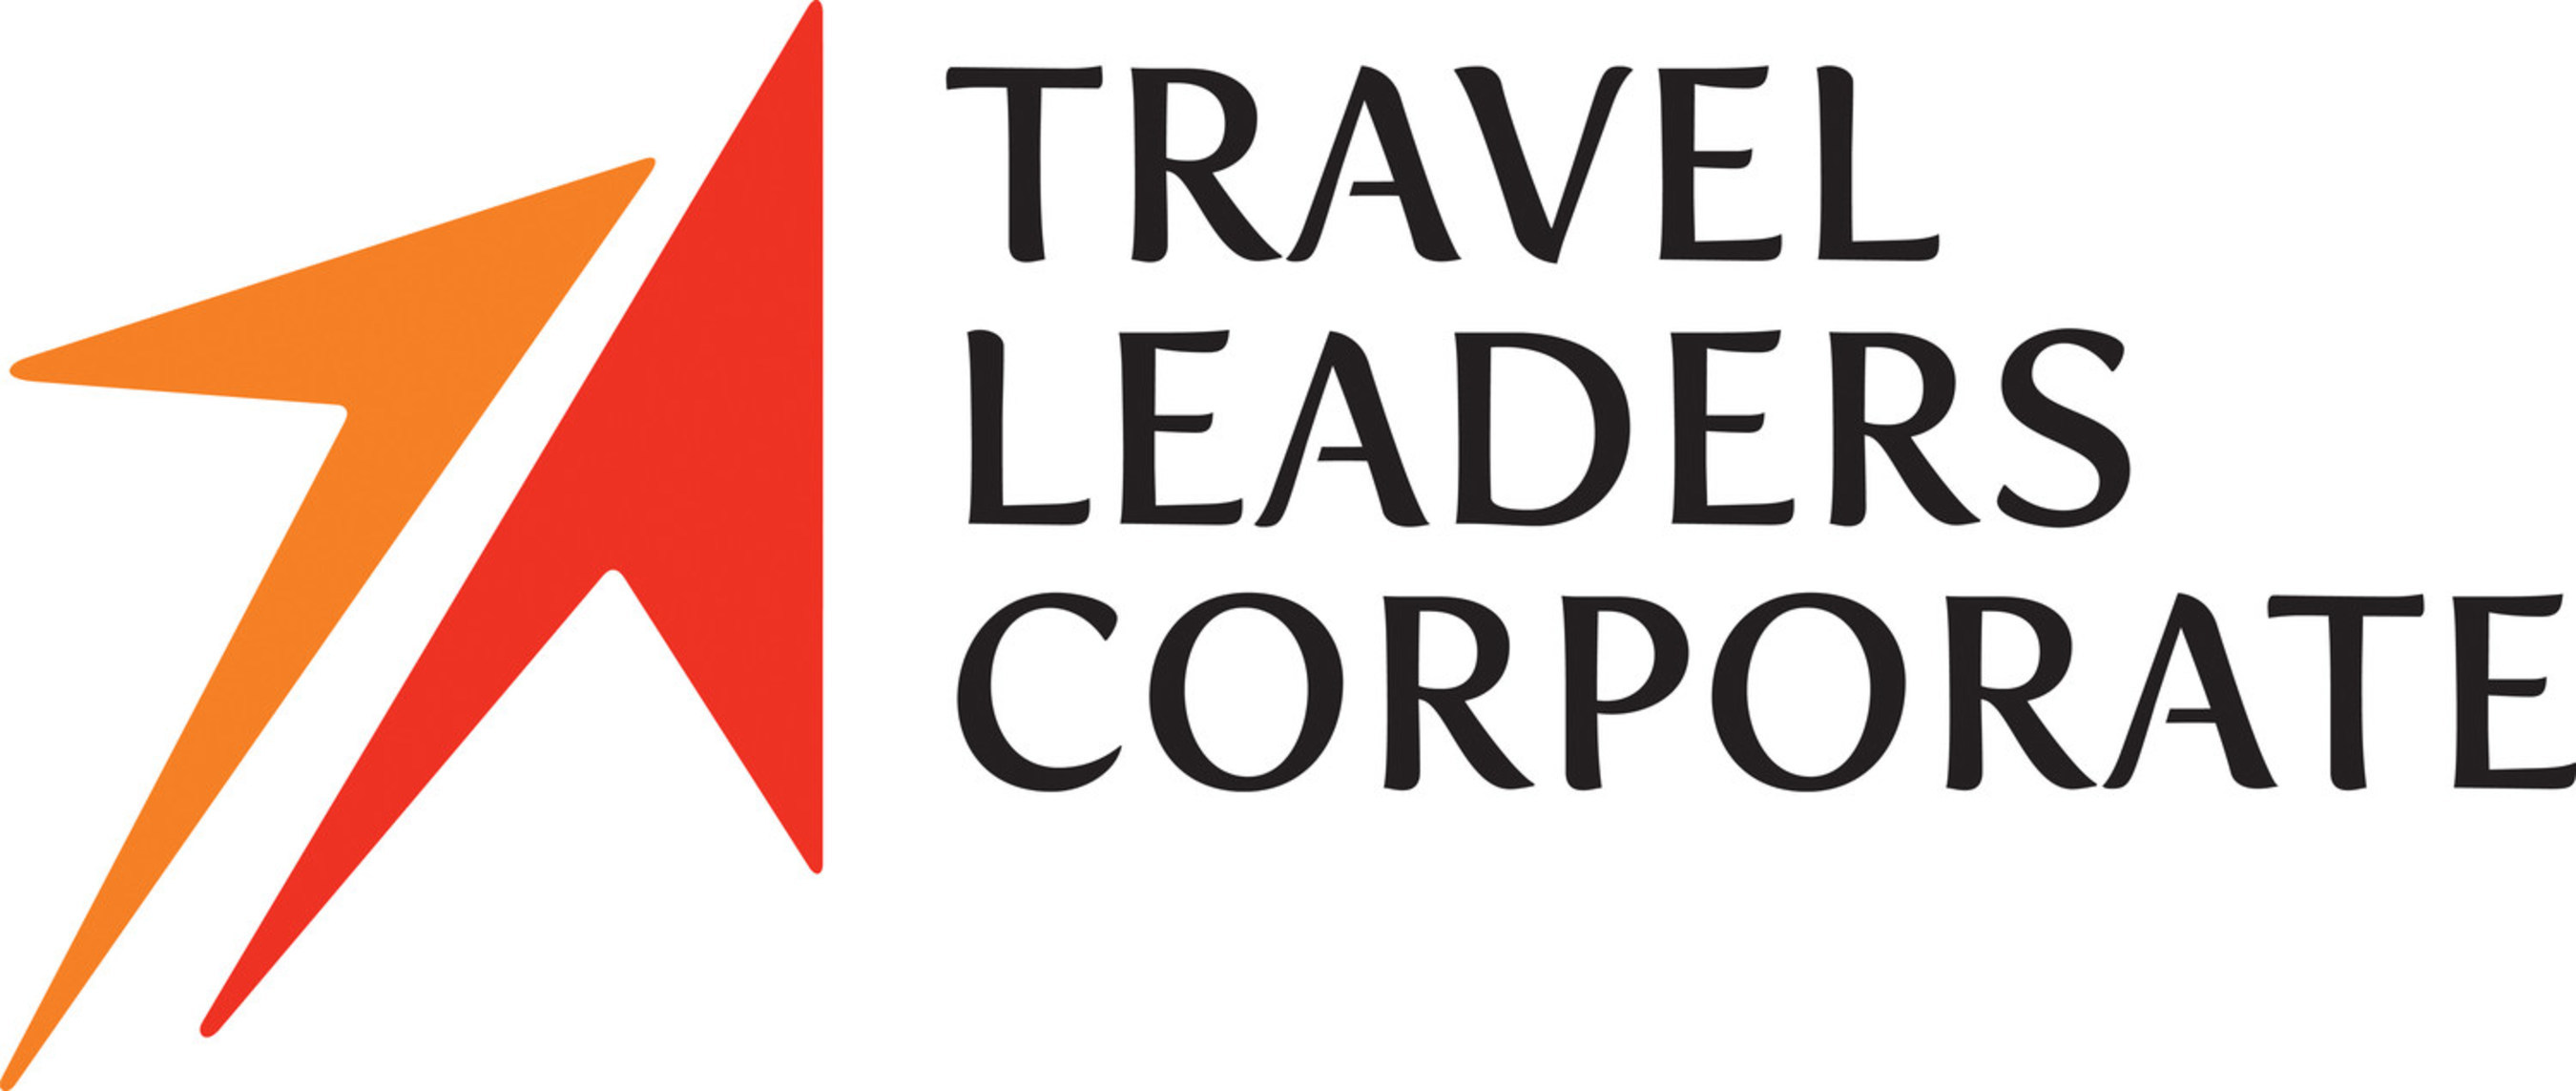 travel leaders group careers